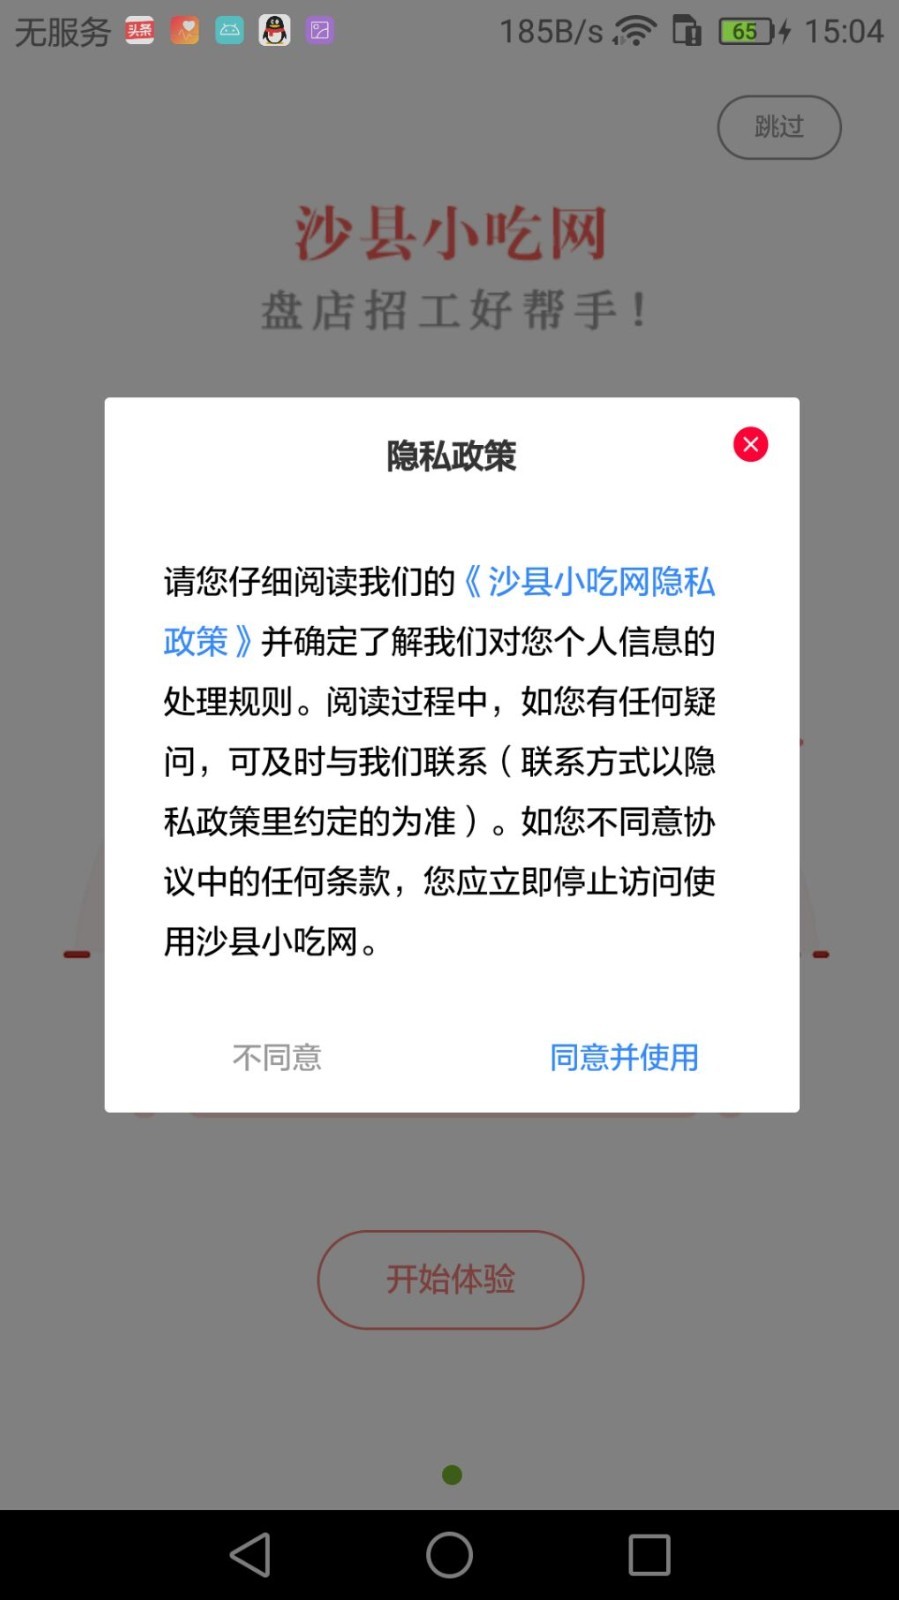 沙县小吃网iPhone版 V1.34